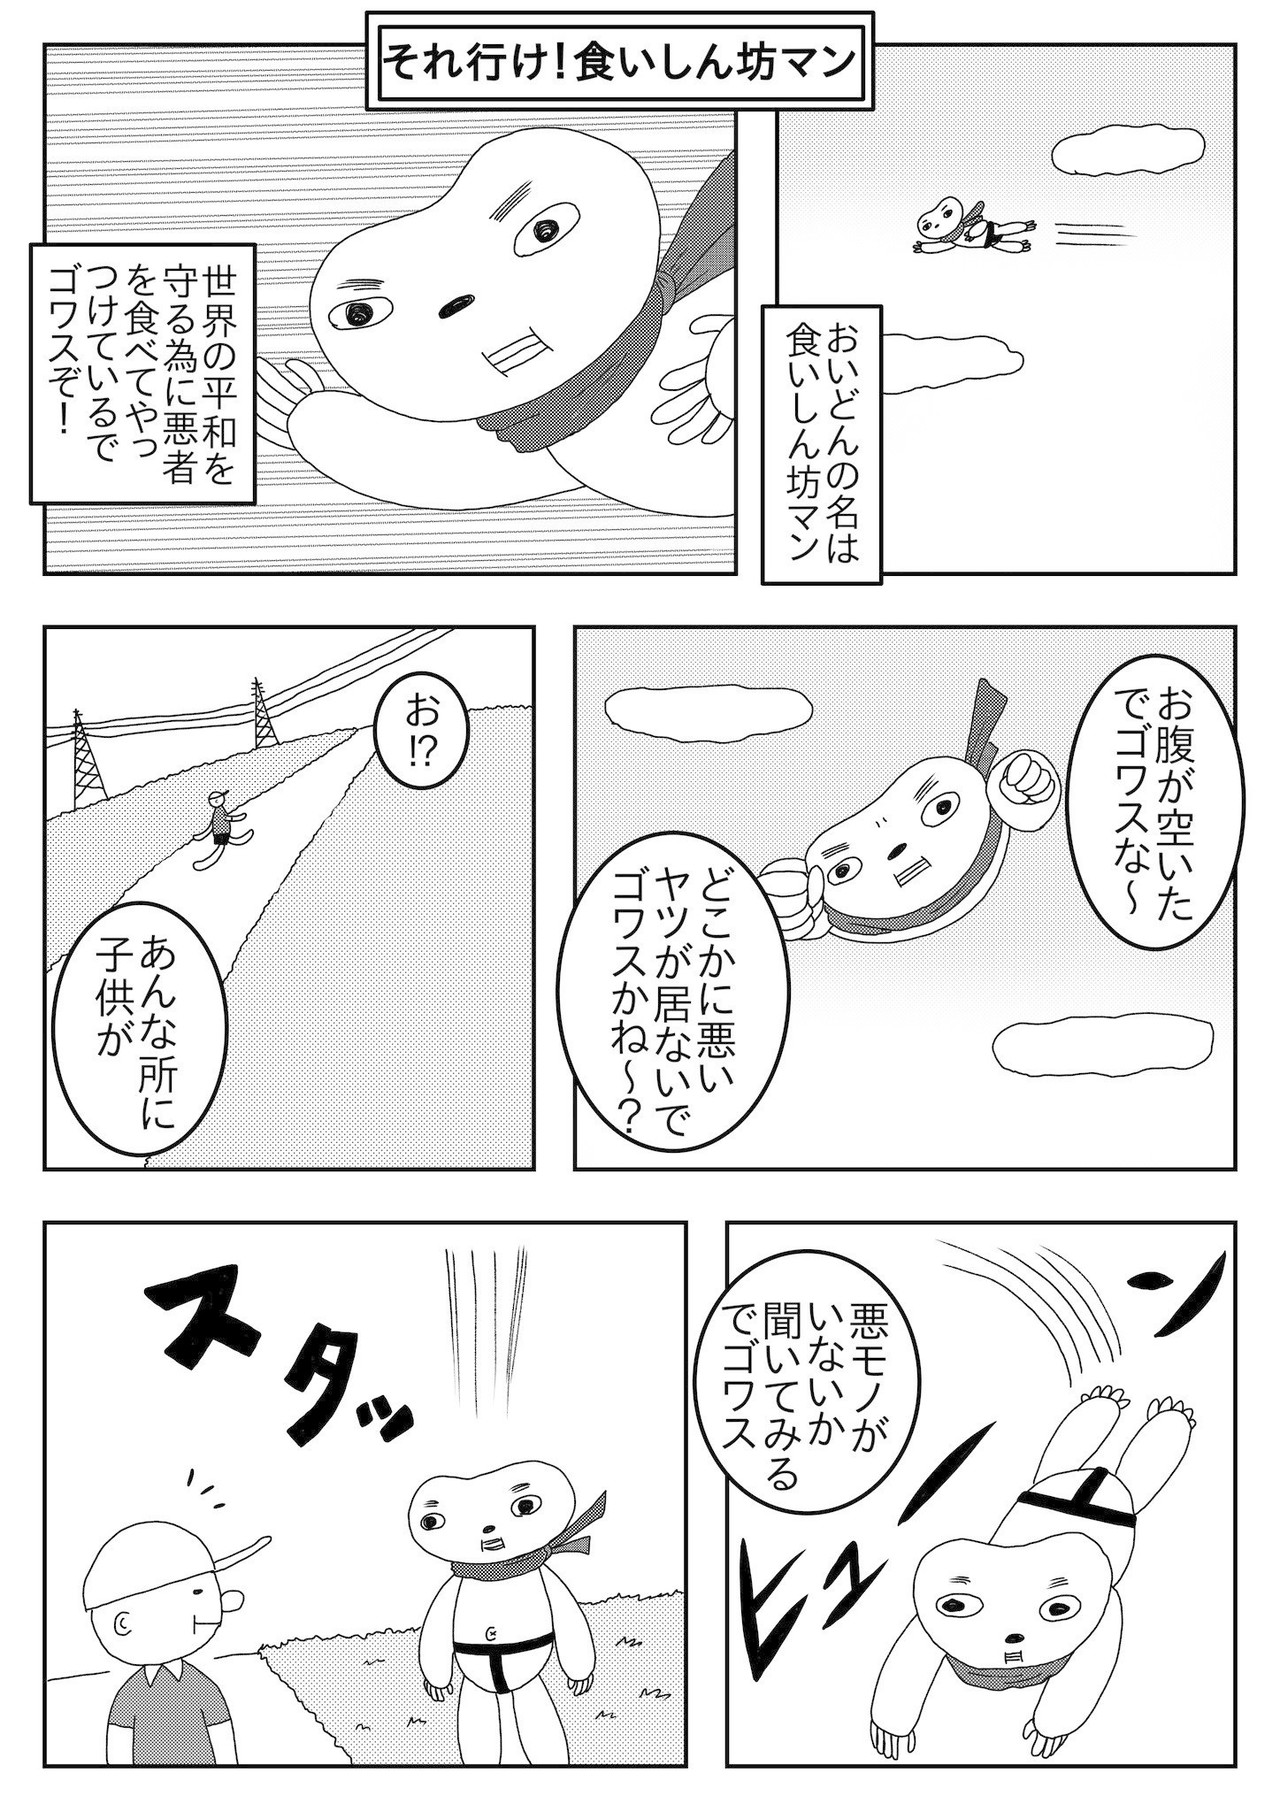 Japan Image 食いしん坊 漫画